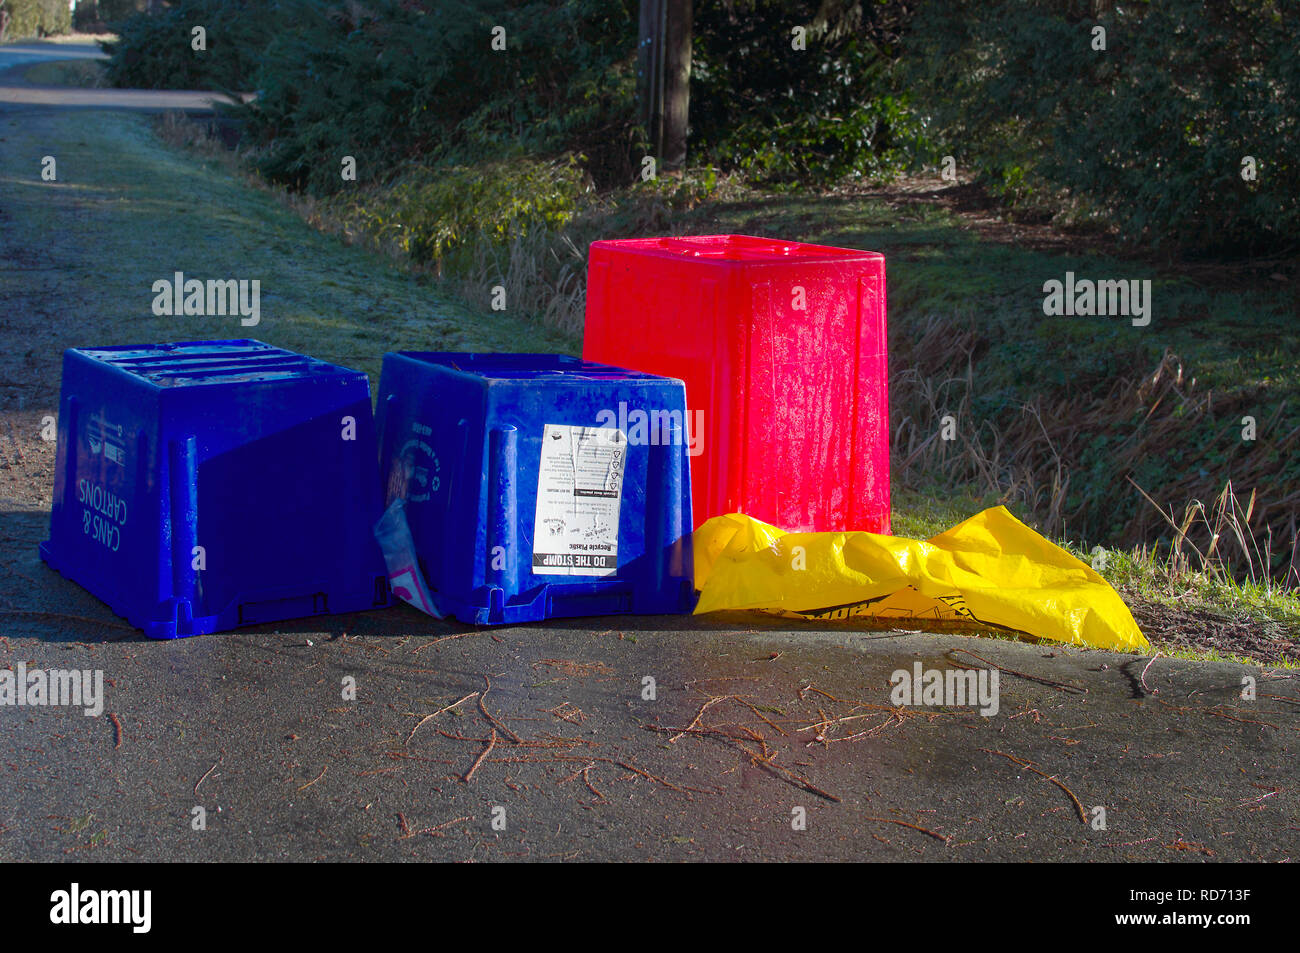 Bidoni spazzatura immagini e fotografie stock ad alta risoluzione - Alamy